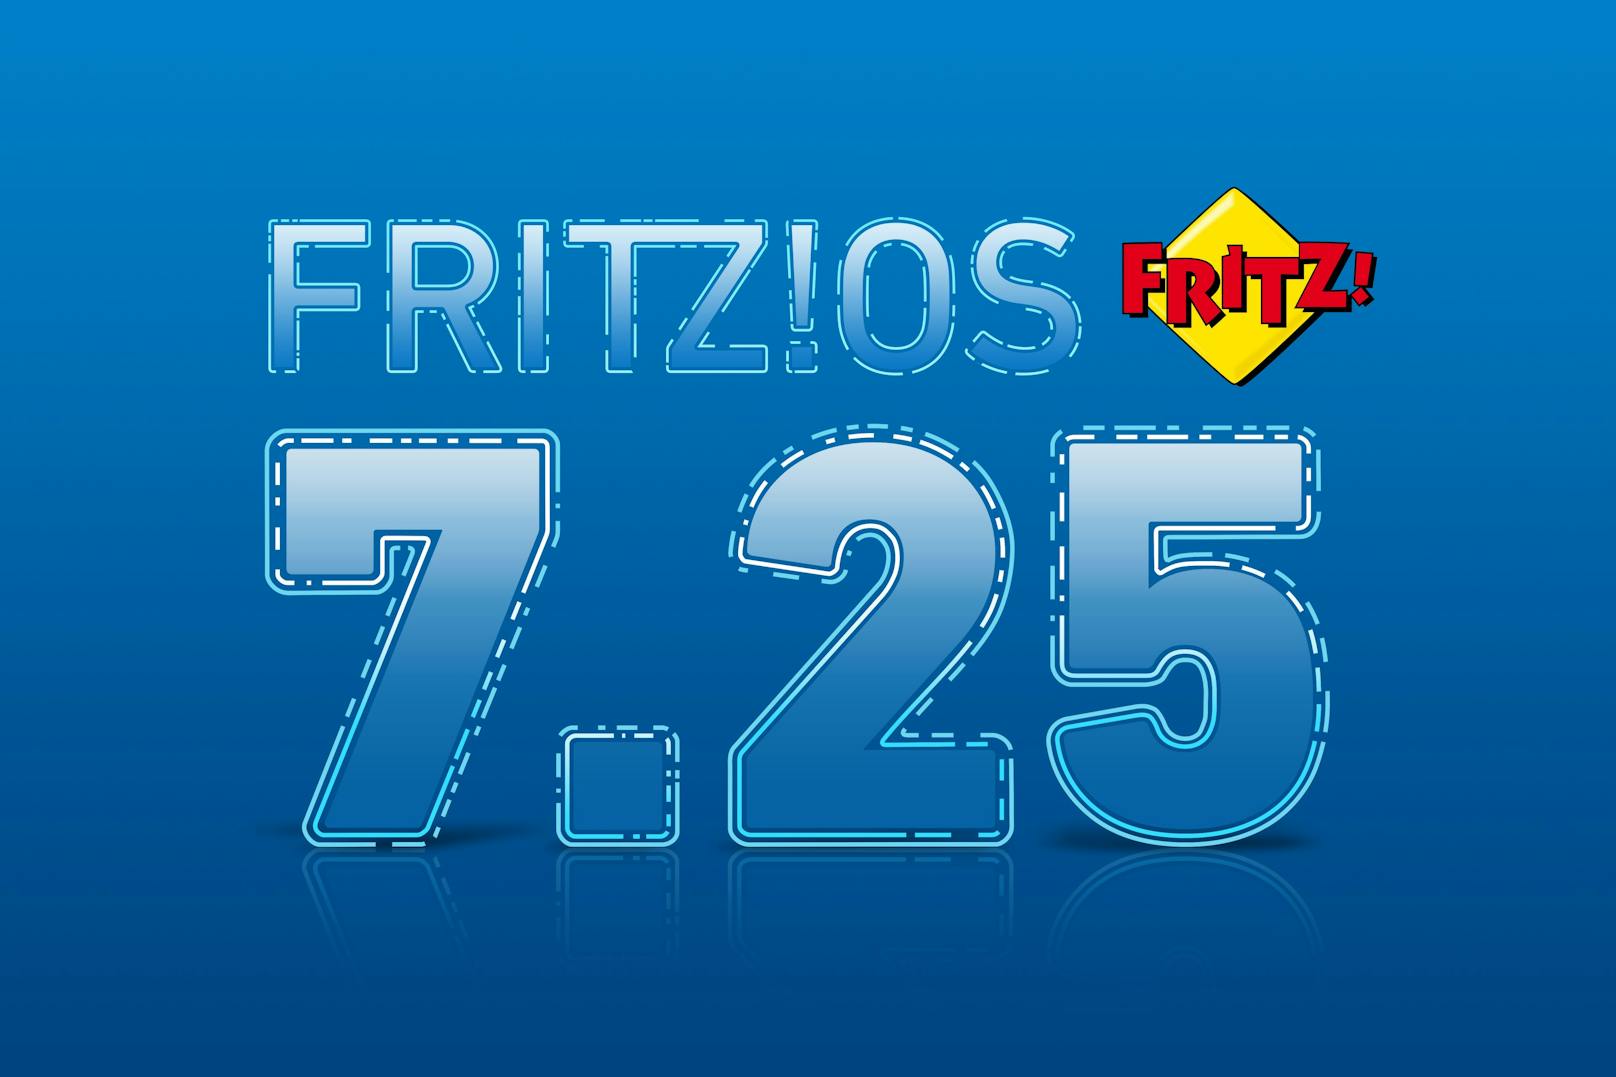 AVM startet mit FRITZ!OS 7.25 - Fokus auf Homeoffice und viel Komfort.